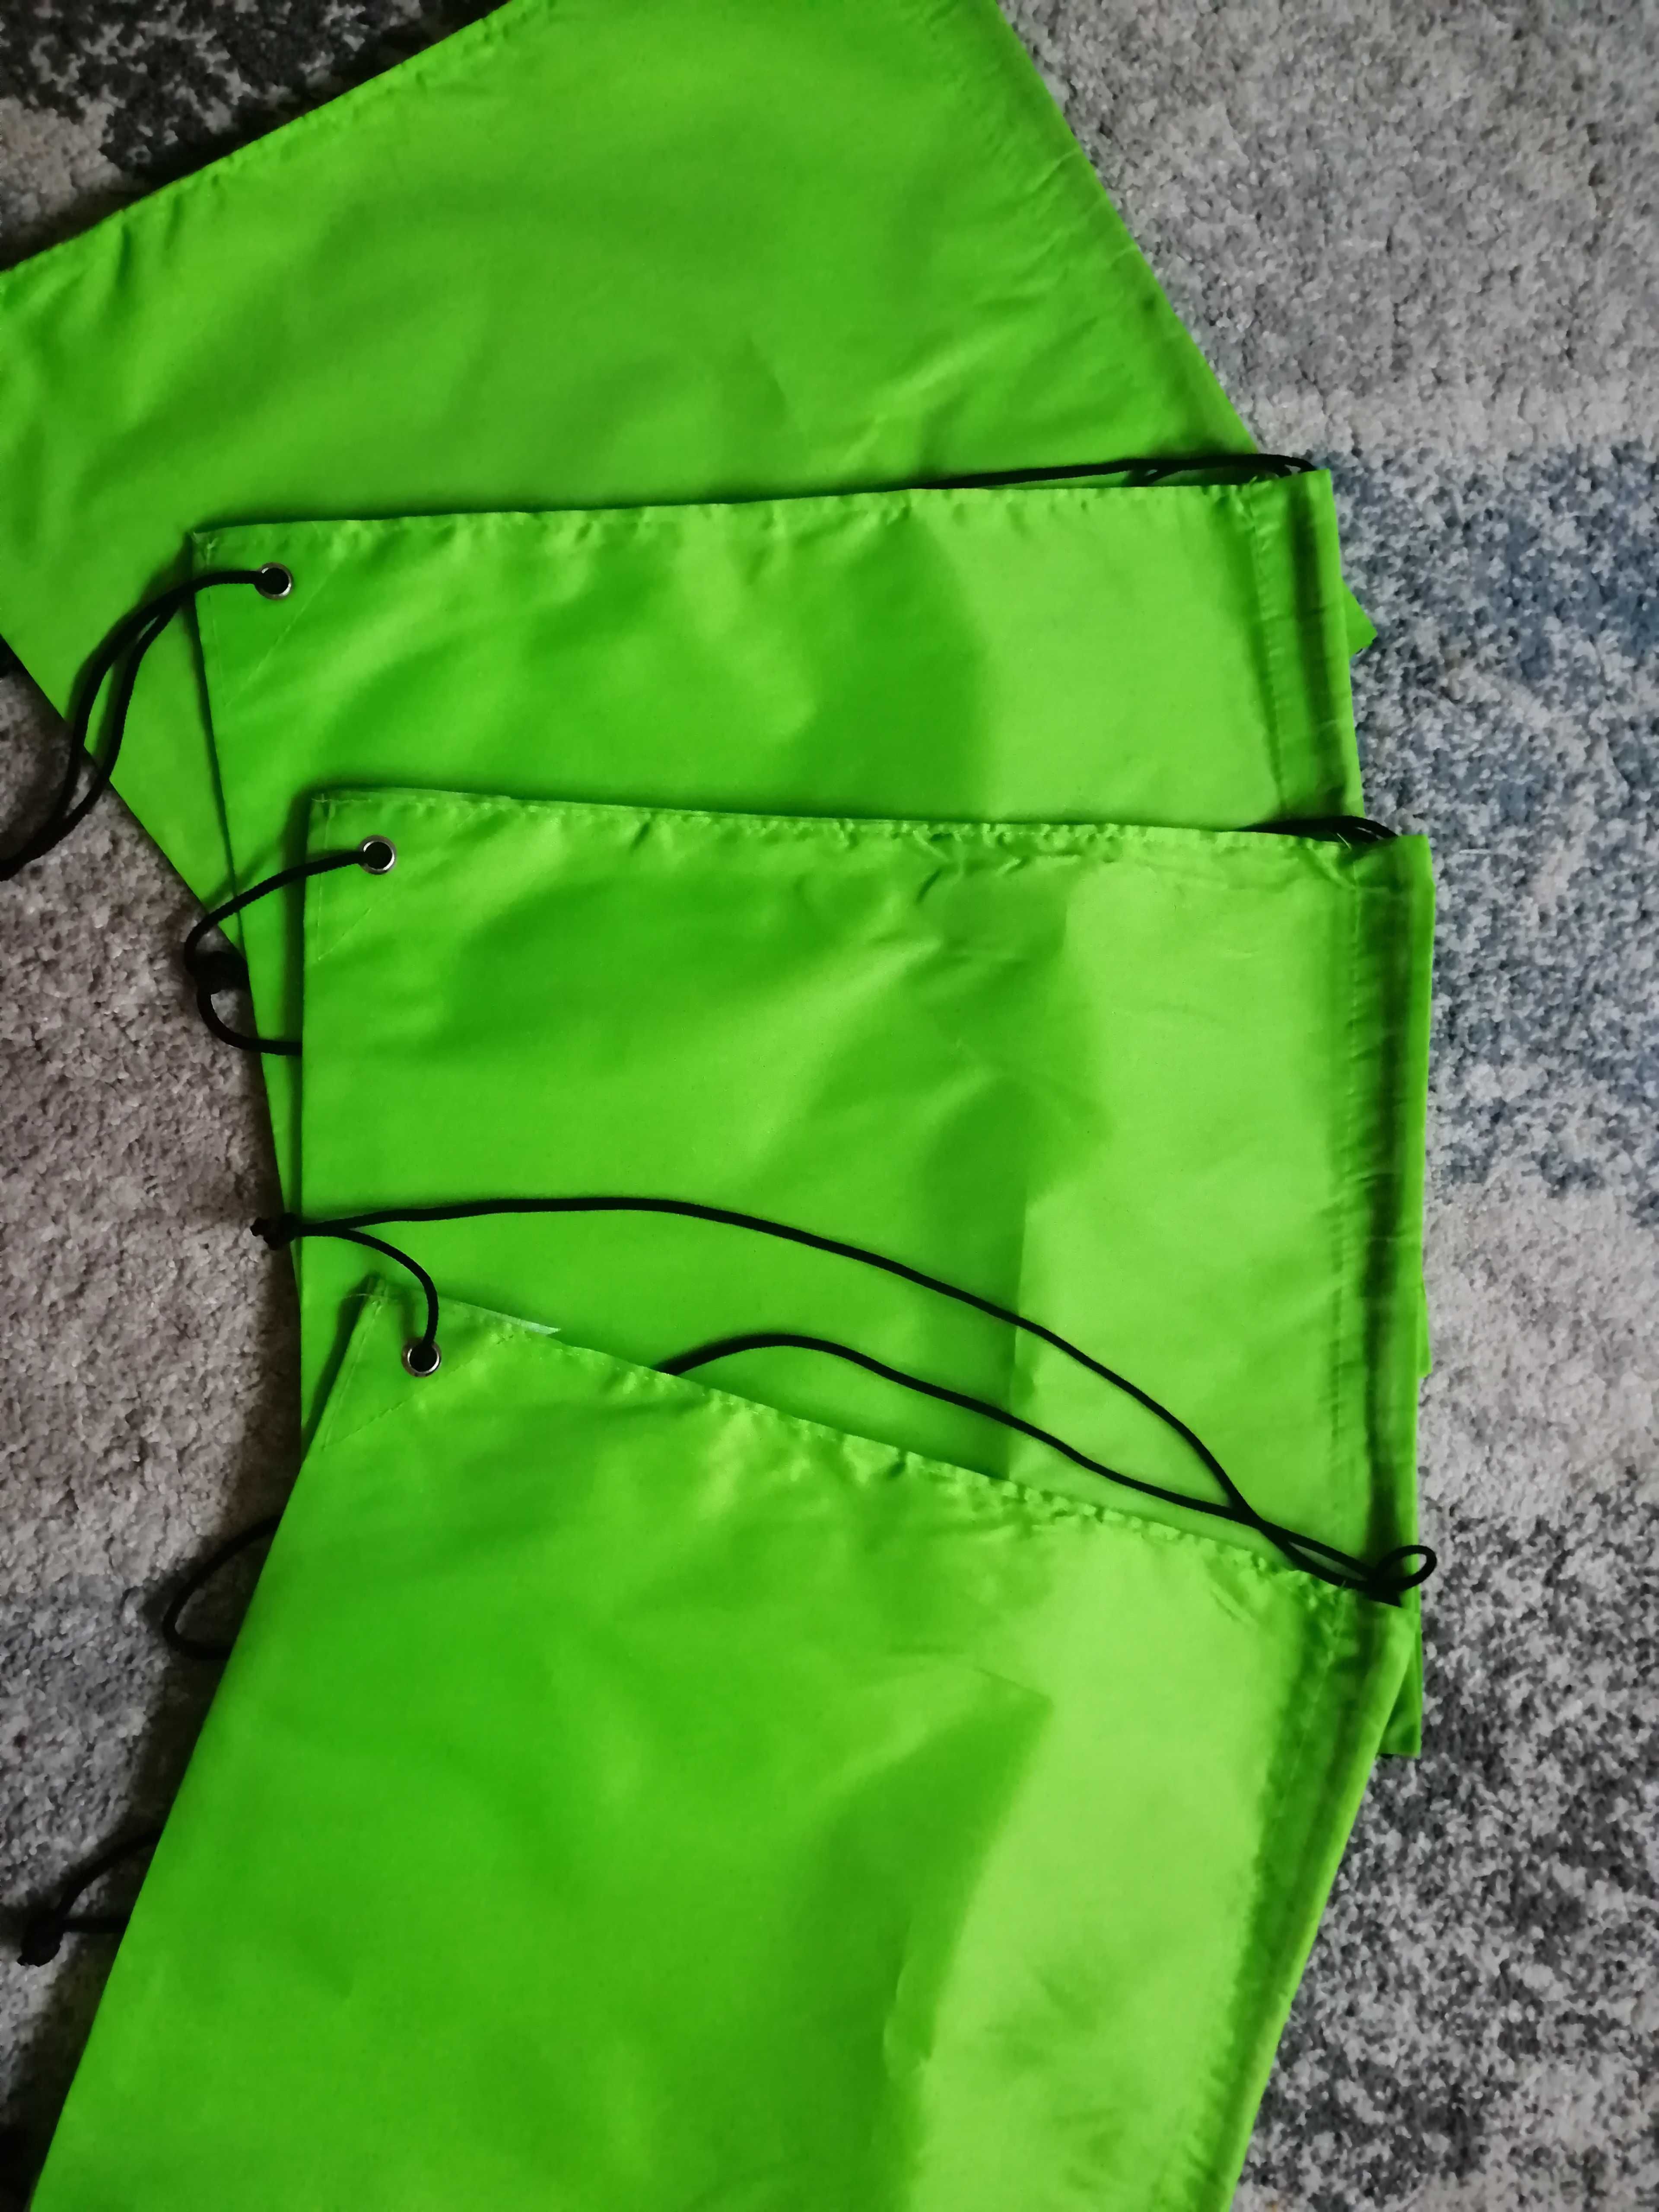 4 szt. Nowe worki,plecak sportowe, jasny zielony neon.